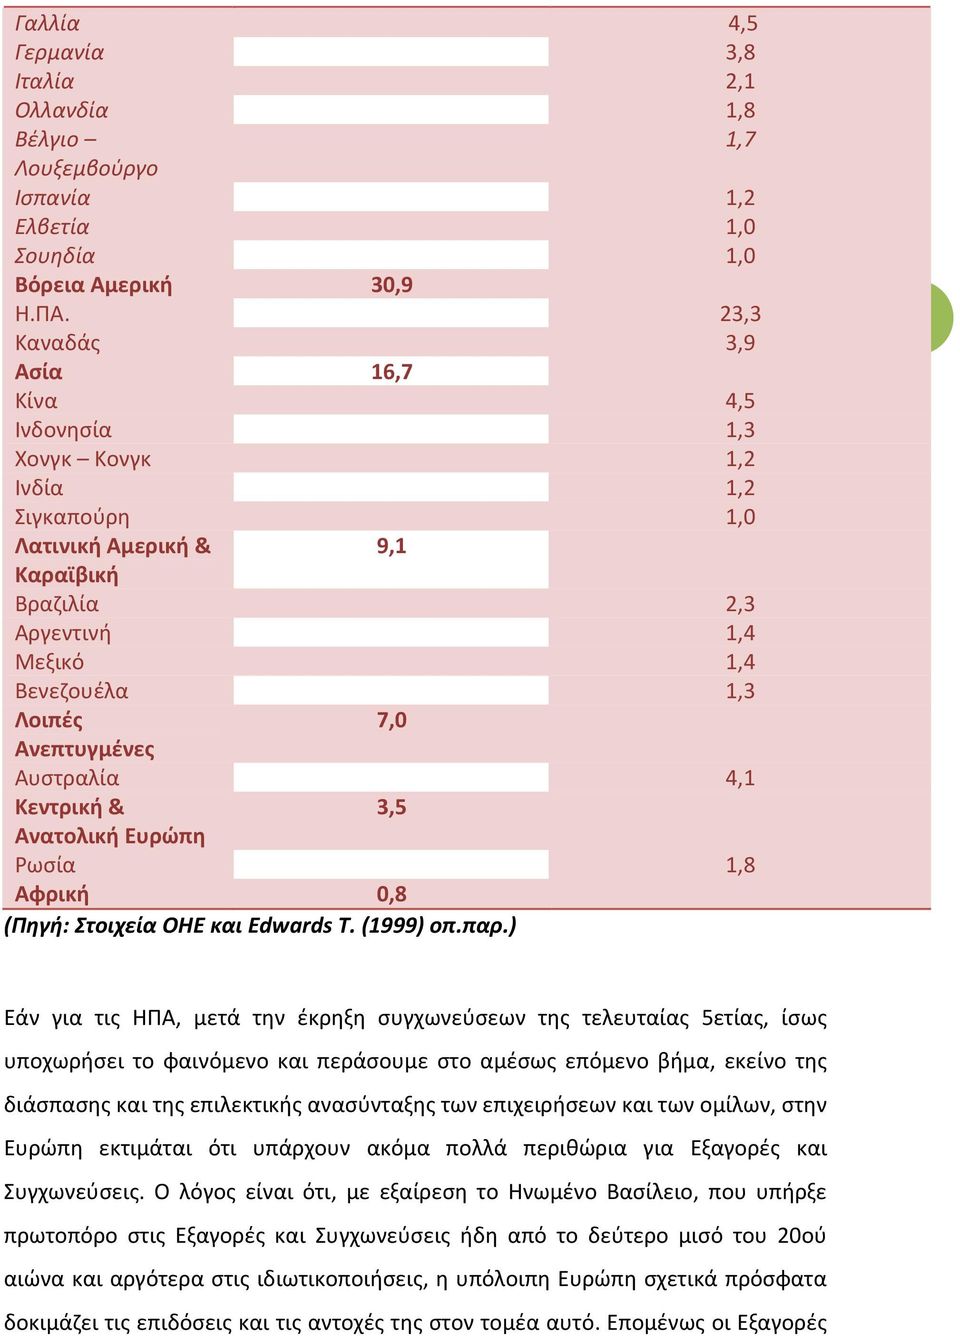 Ανεπτυγμένες Αυστραλία 4,1 Κεντρική & 3,5 Ανατολική Ευρώπη Ρωσία 1,8 Αφρική 0,8 (Πηγή: Στοιχεία ΟΗΕ και Edwards Τ. (1999) οπ.παρ.